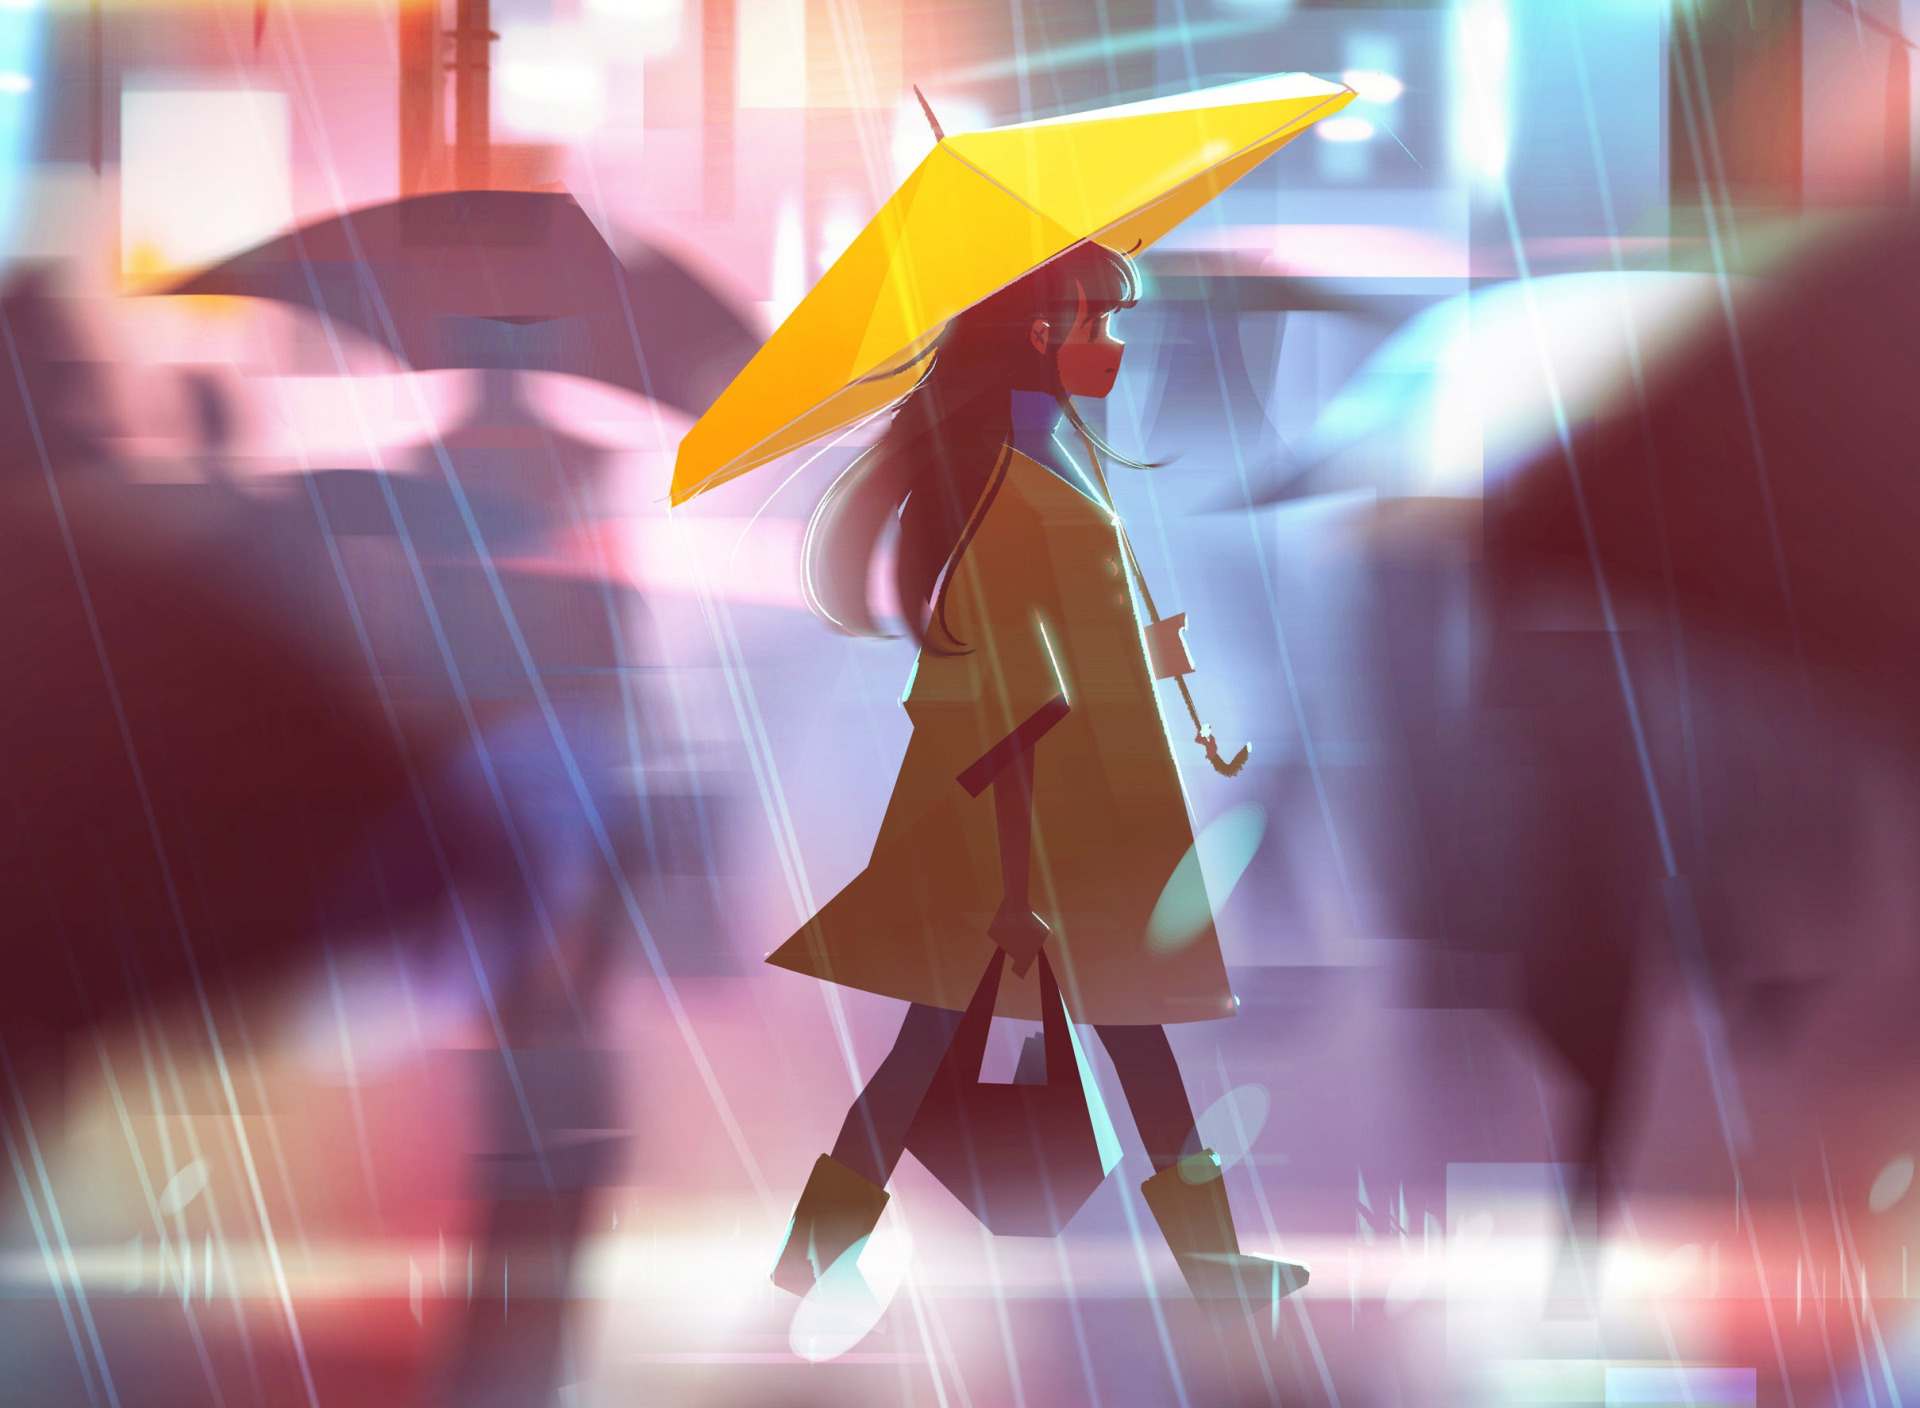 Плащ под дождь. Девочка в плаще под дождем. Девушка с зонтом арт.